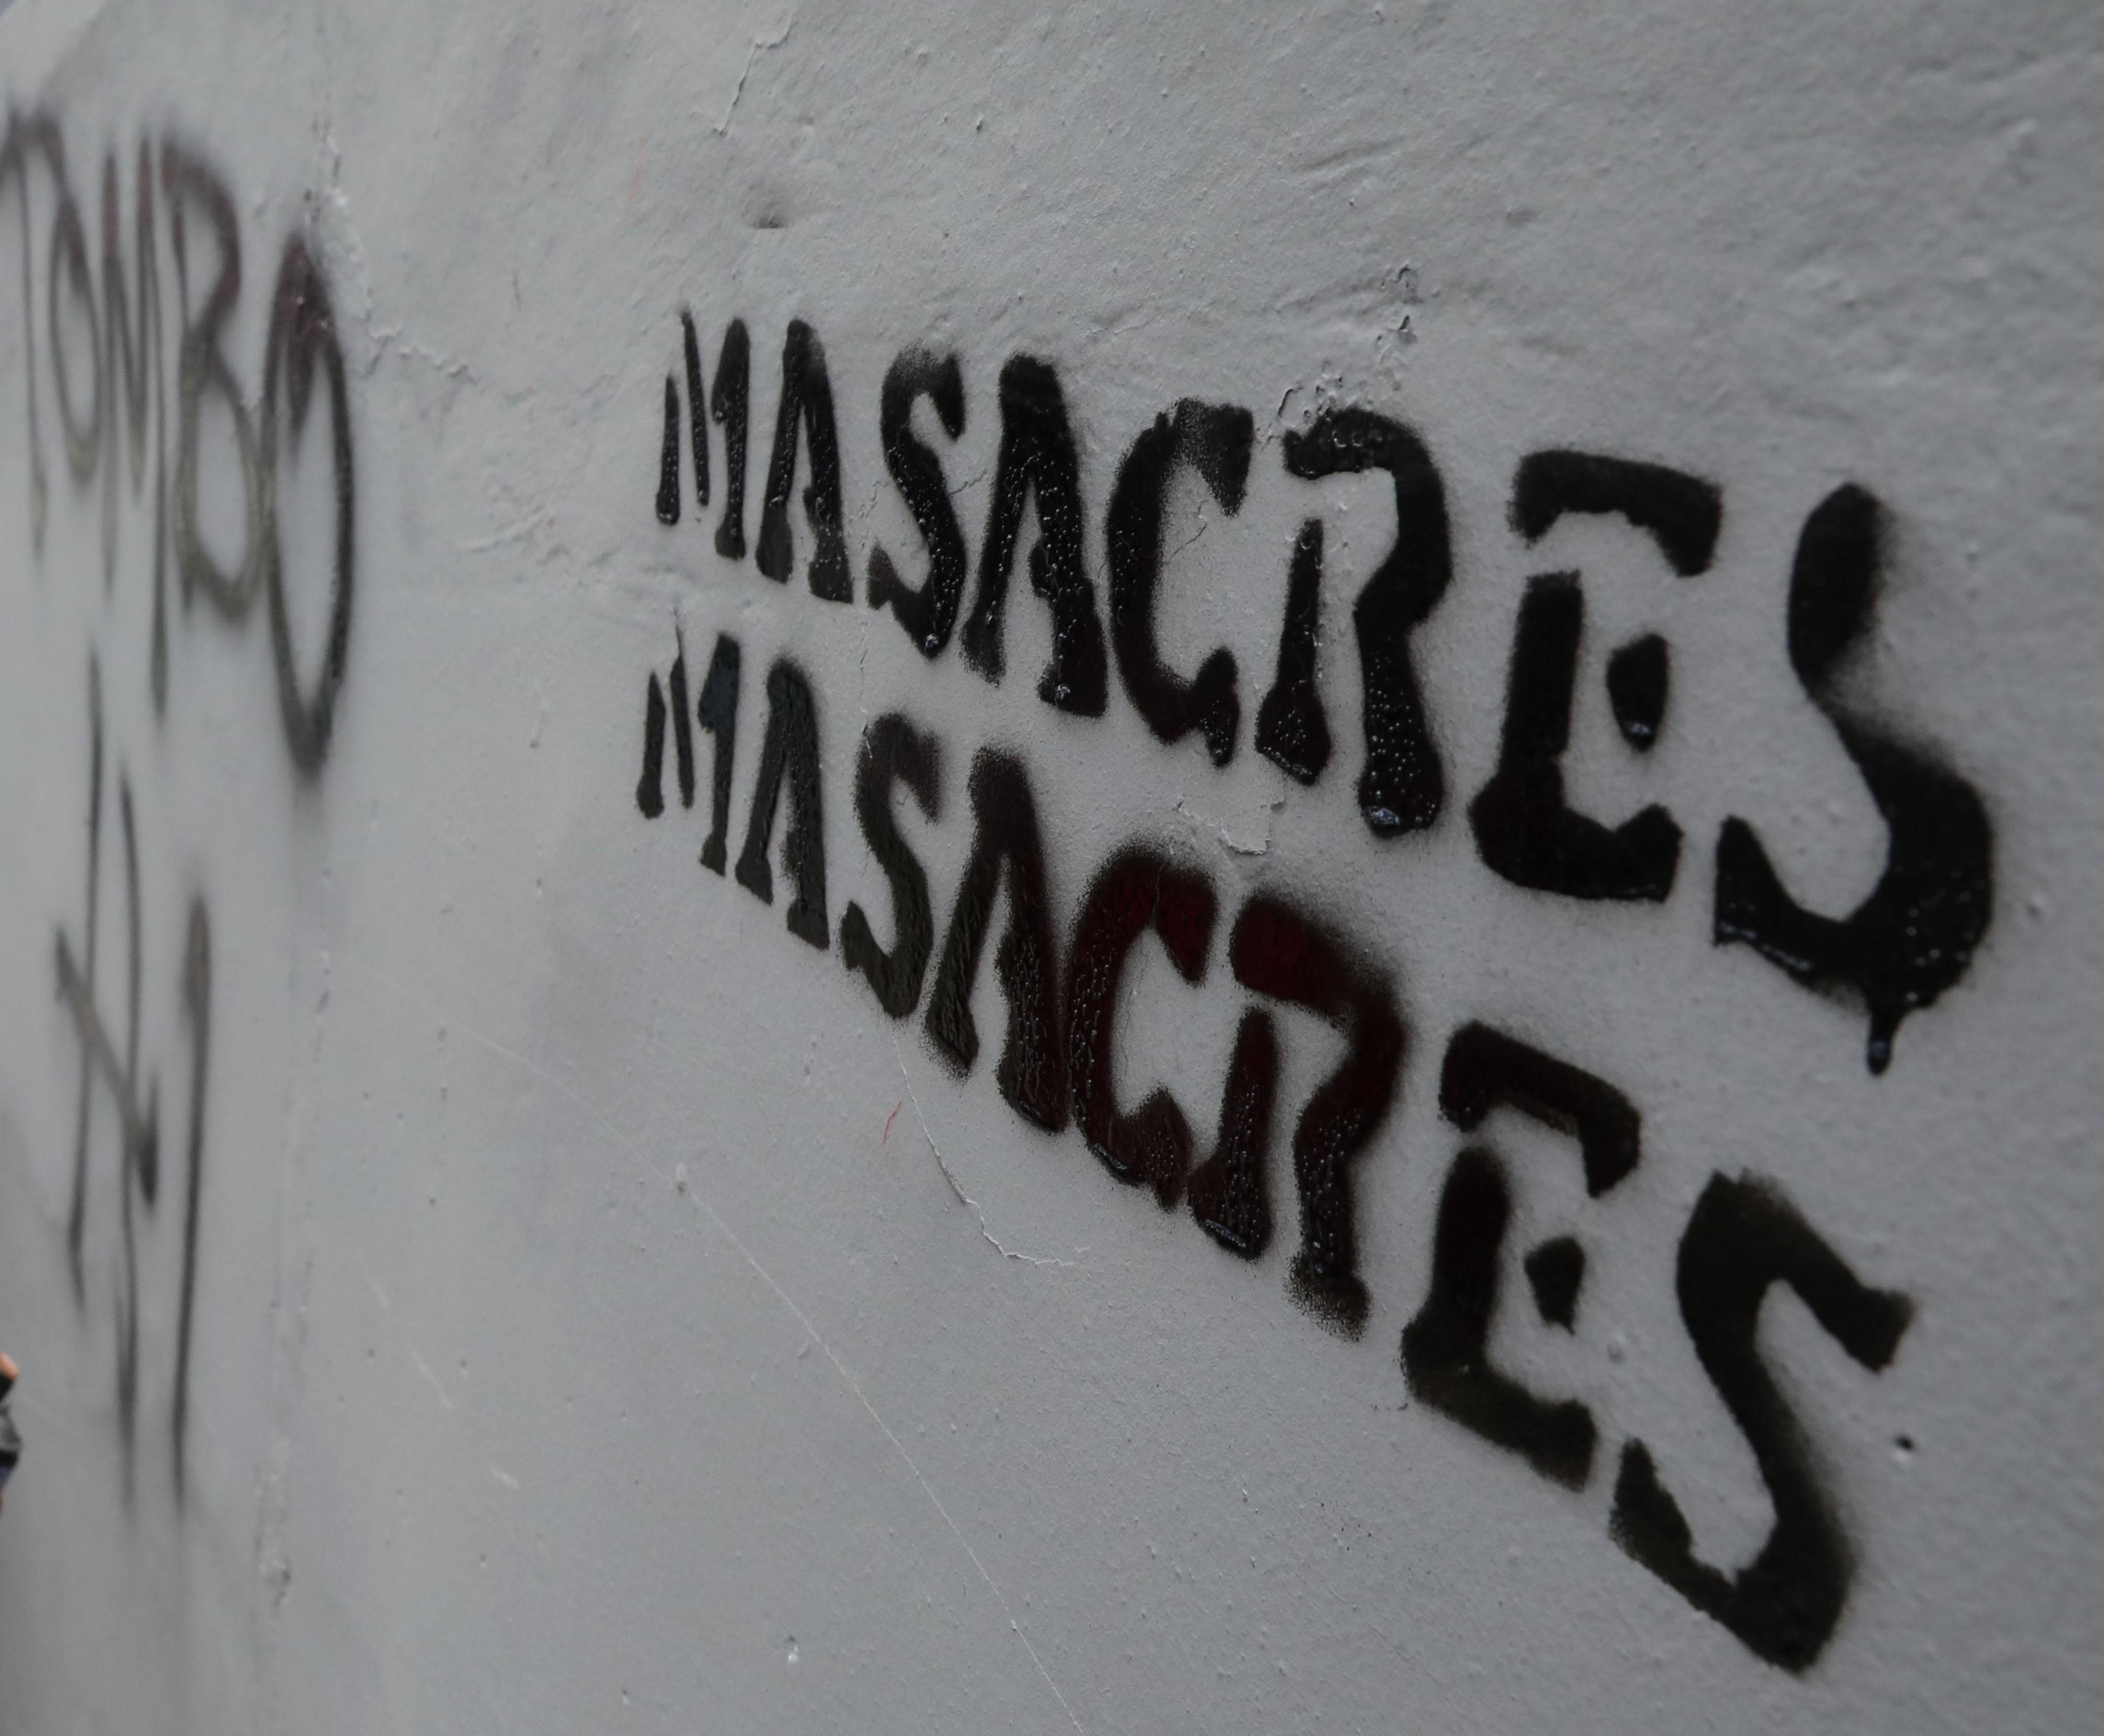 Fotograf&#237;a tomada el pasado 27 de agosto en la que se registr&#243; un grafiti en contra de la reciente ola de masacres en Colombia, durante una protesta contra estos actos criminales, en Bogot&#225; (Colombia). EFE/Carlos Ortega/Archivo
